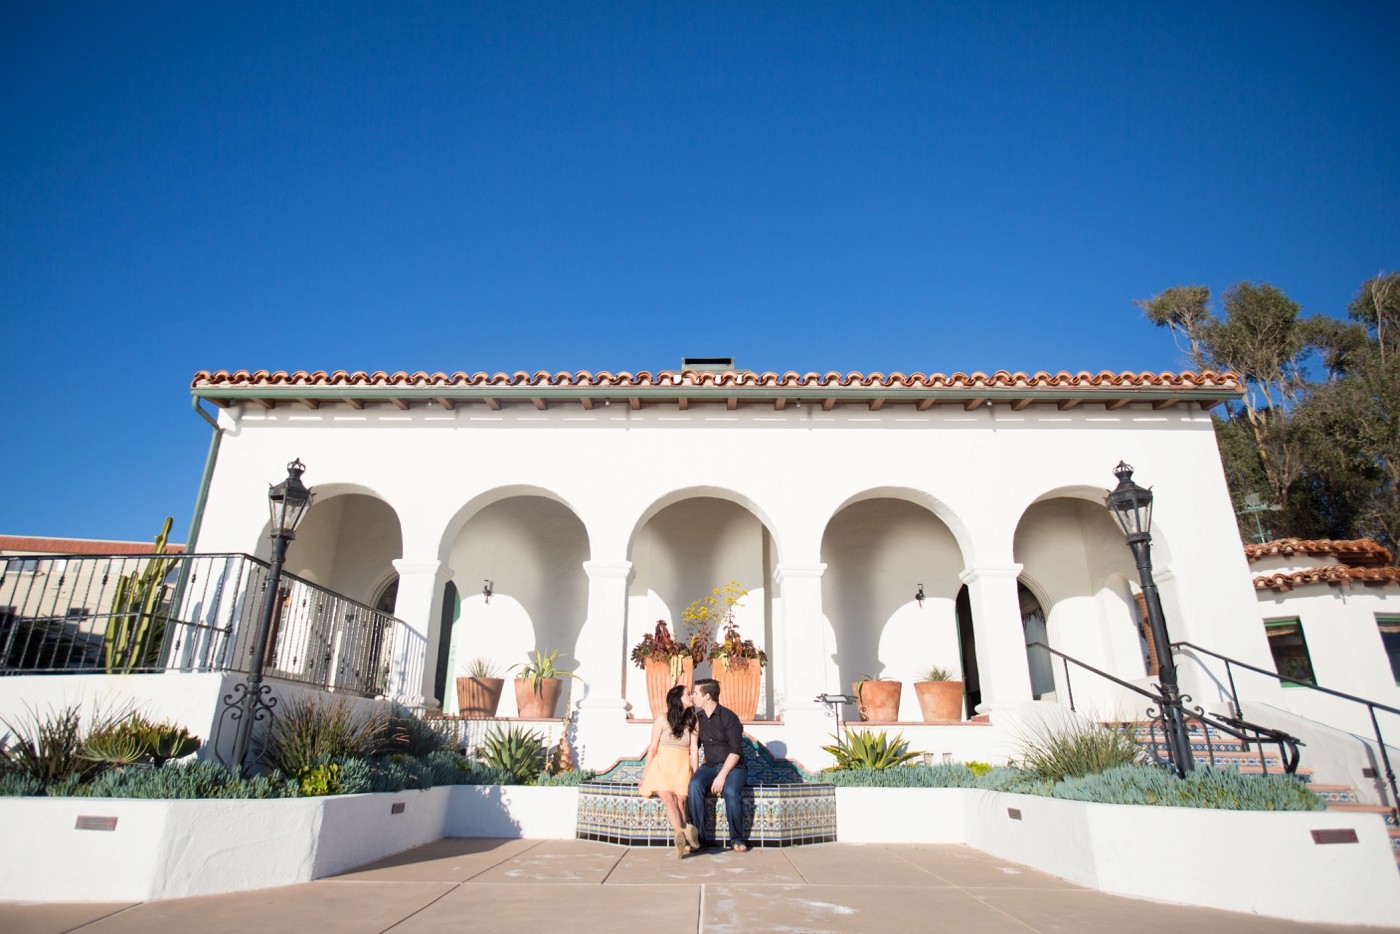 Casa Romantica San Clemente Engagement